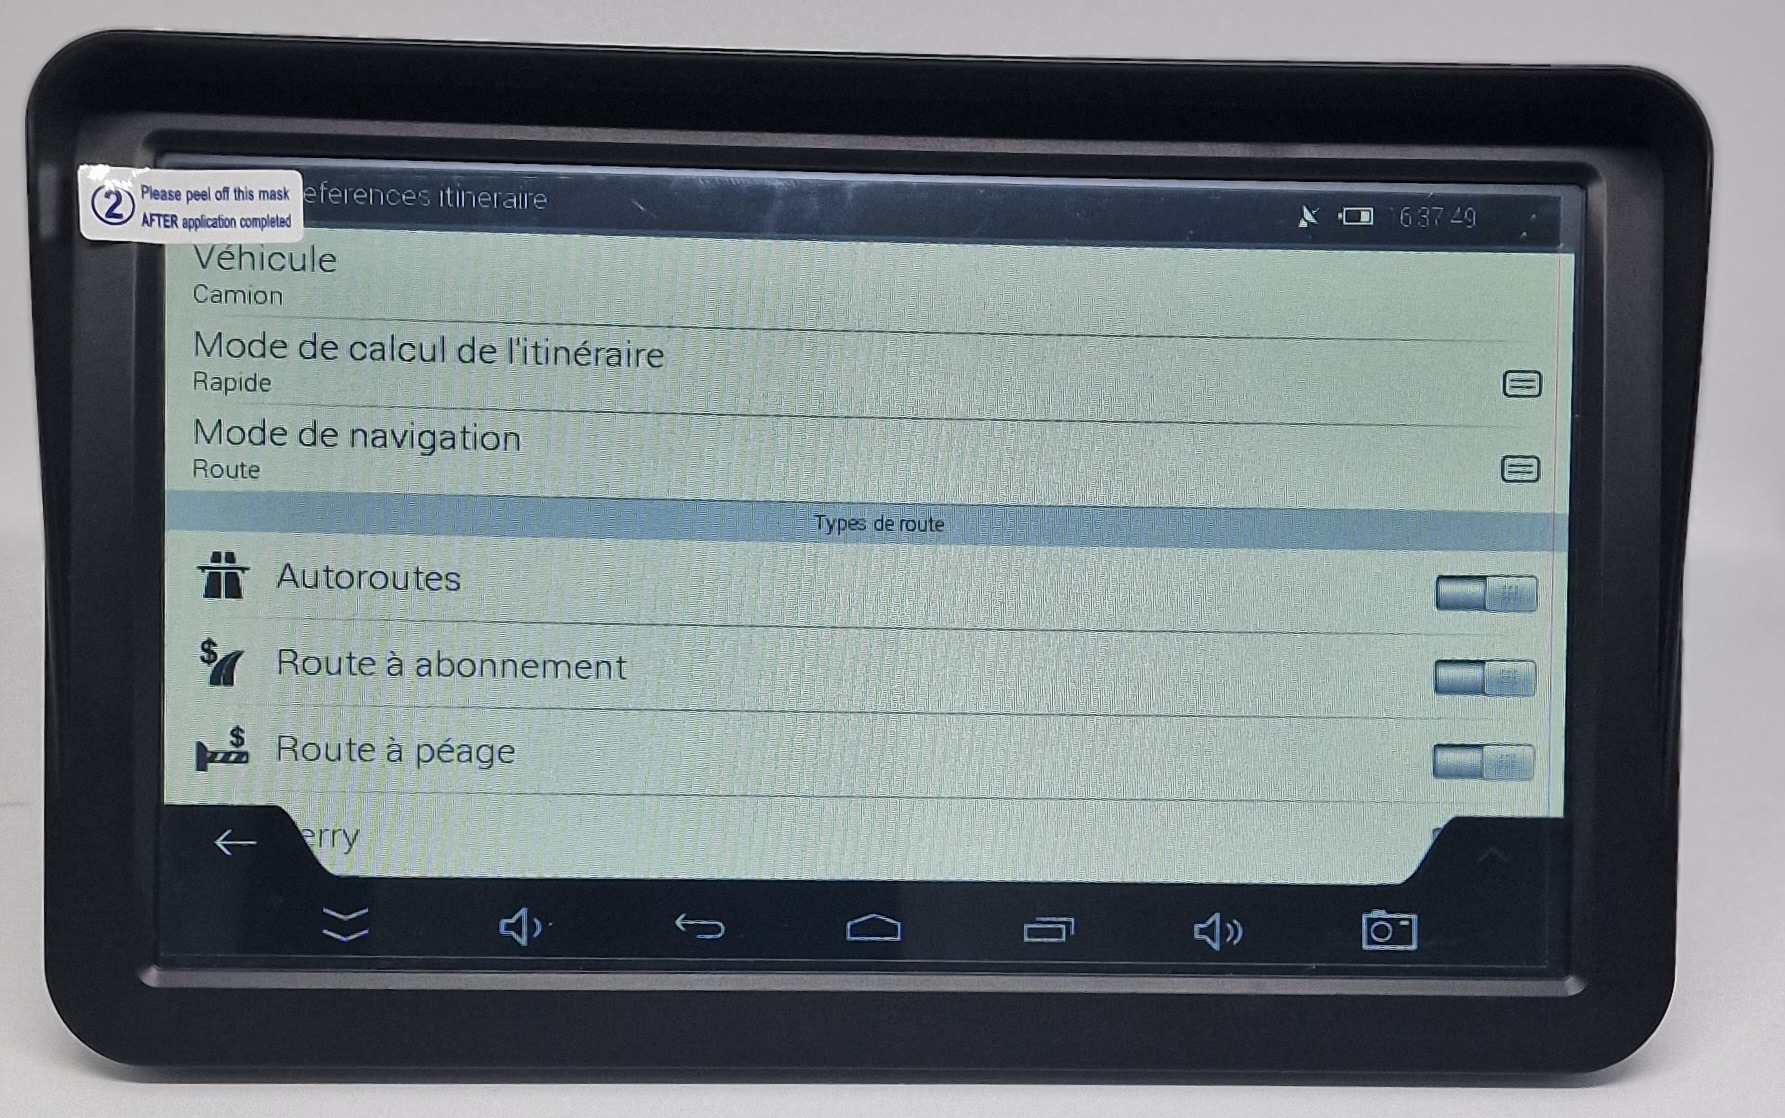 I Tablette Android Gps Navig Appareil de navigation portable 8 pouc